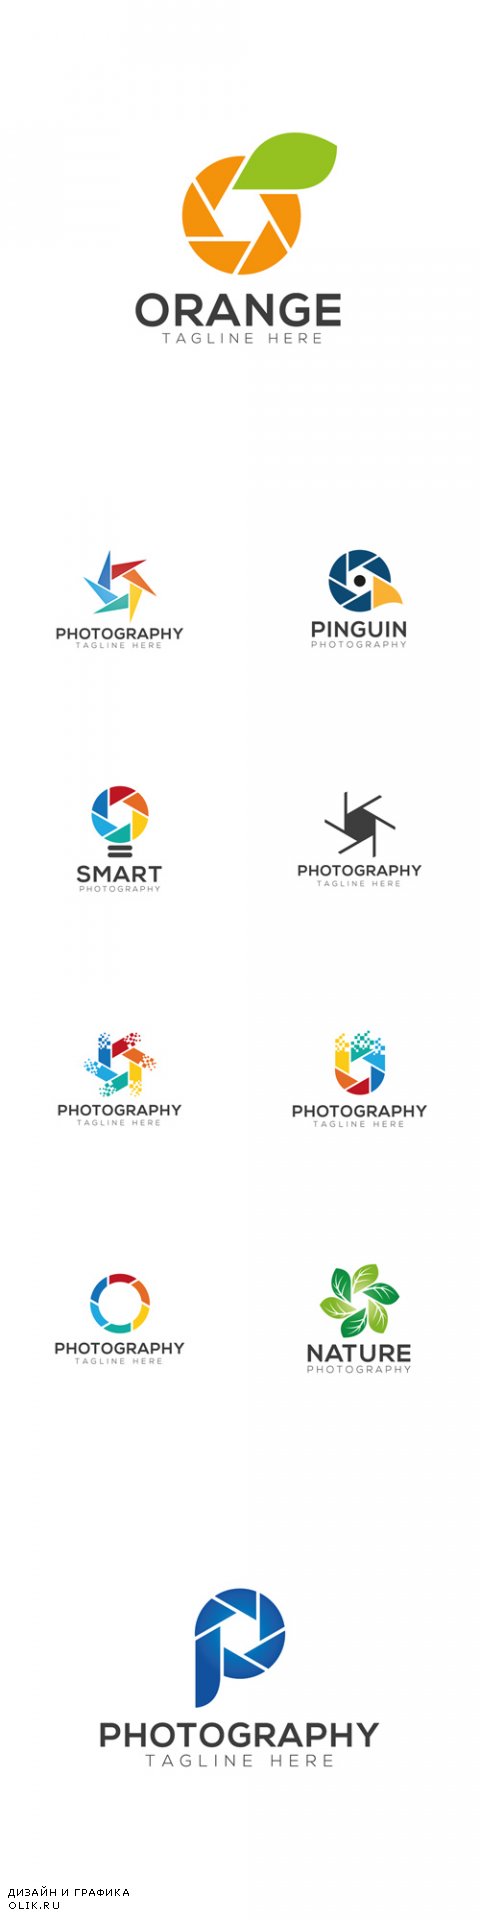 Vector Photography Creative Logo Design